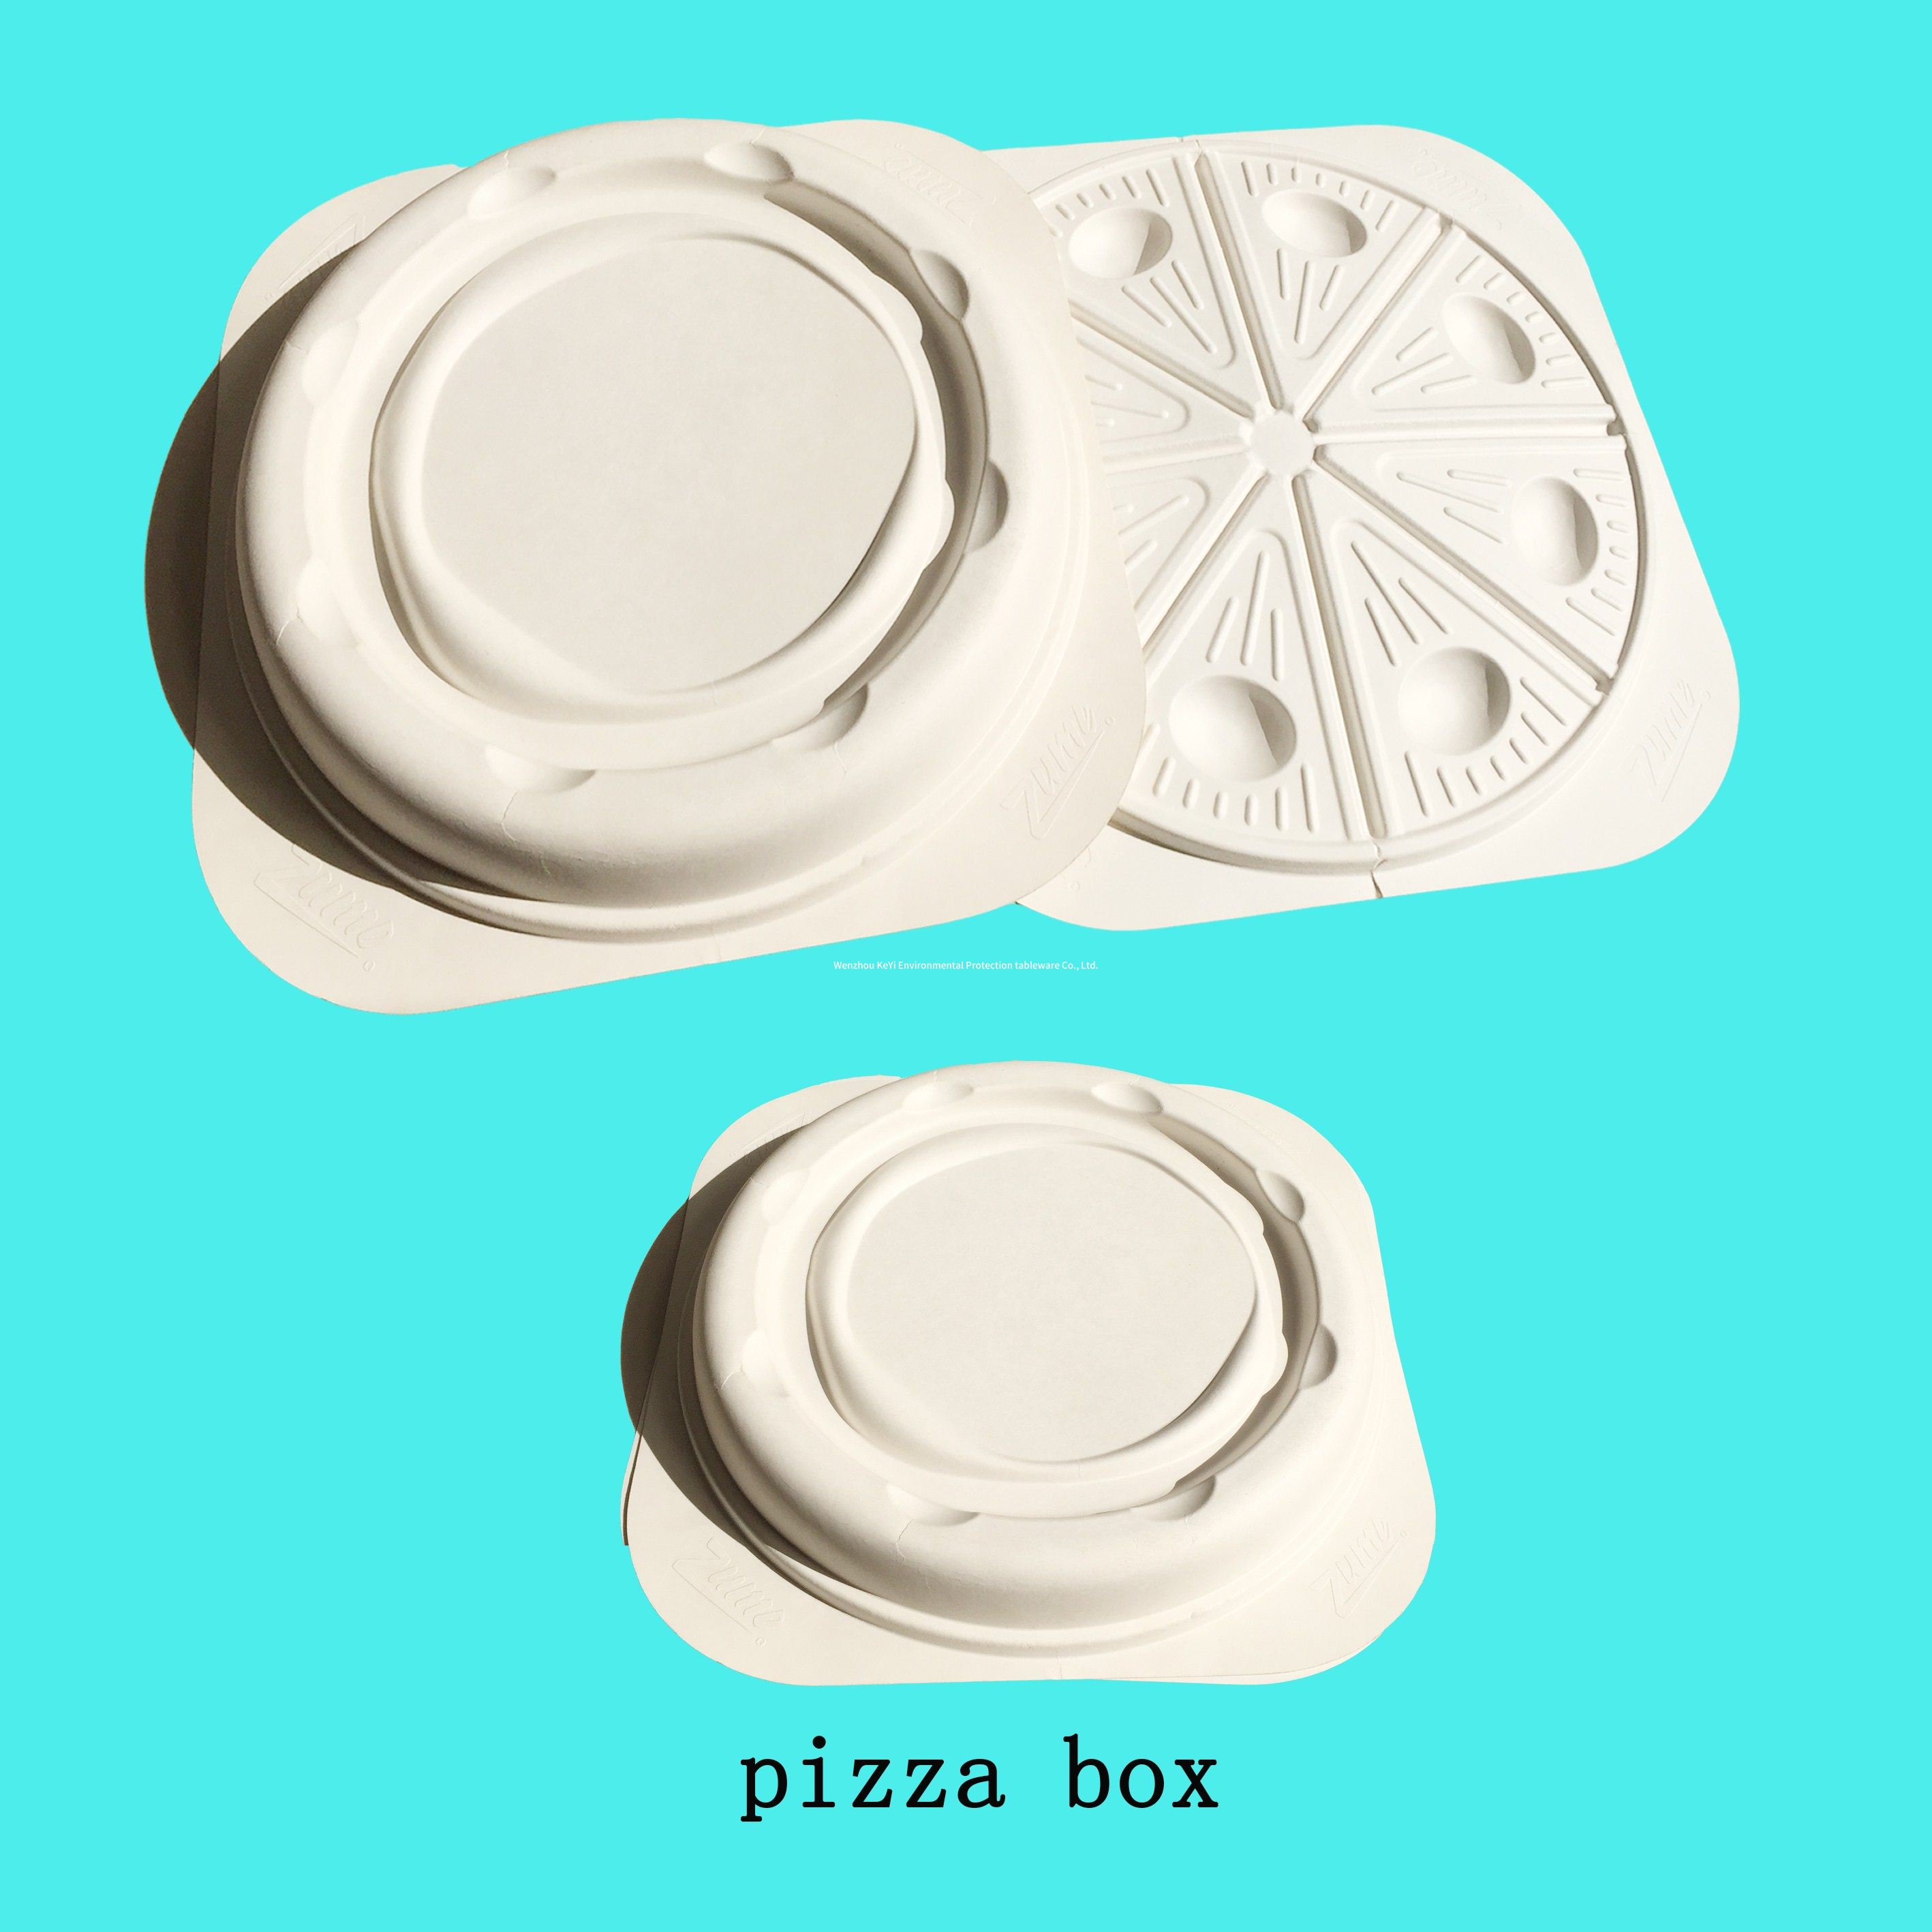 一次性环保可降解 披萨盒